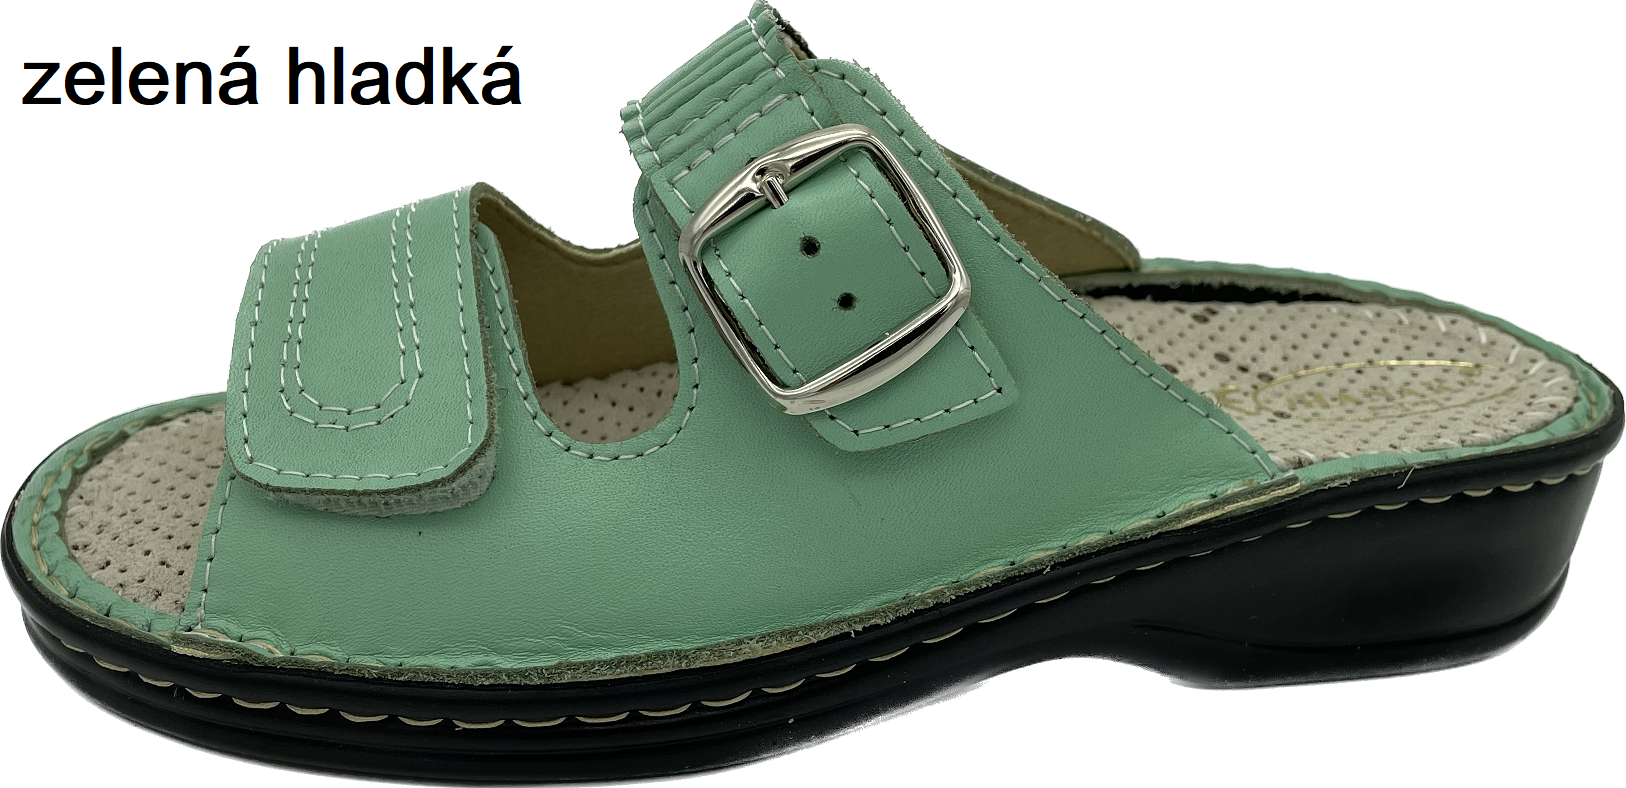 Boty Hanák vzor 305 - černá podešev Barva usně: zelená hladká, Velikosti obuvi: 39